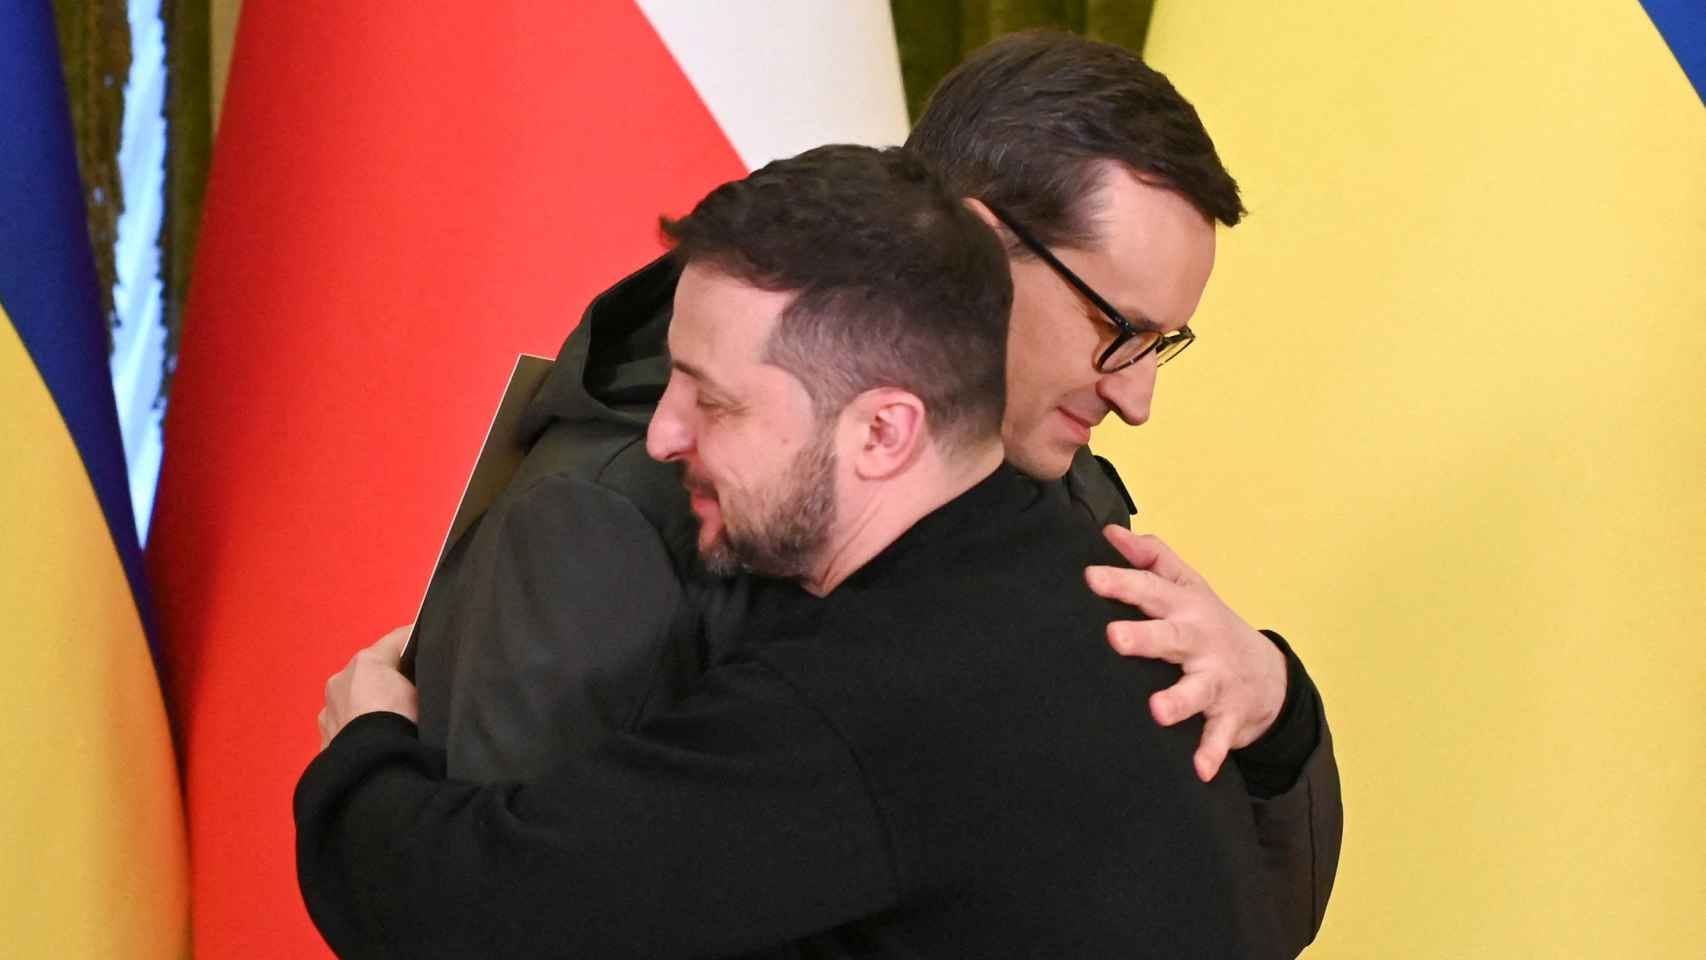 El presidente de Ucrania, Zelenskiy, y el primer ministro polaco, Morawiecki, se abrazan durante una conferencia de prensa en Kiev.